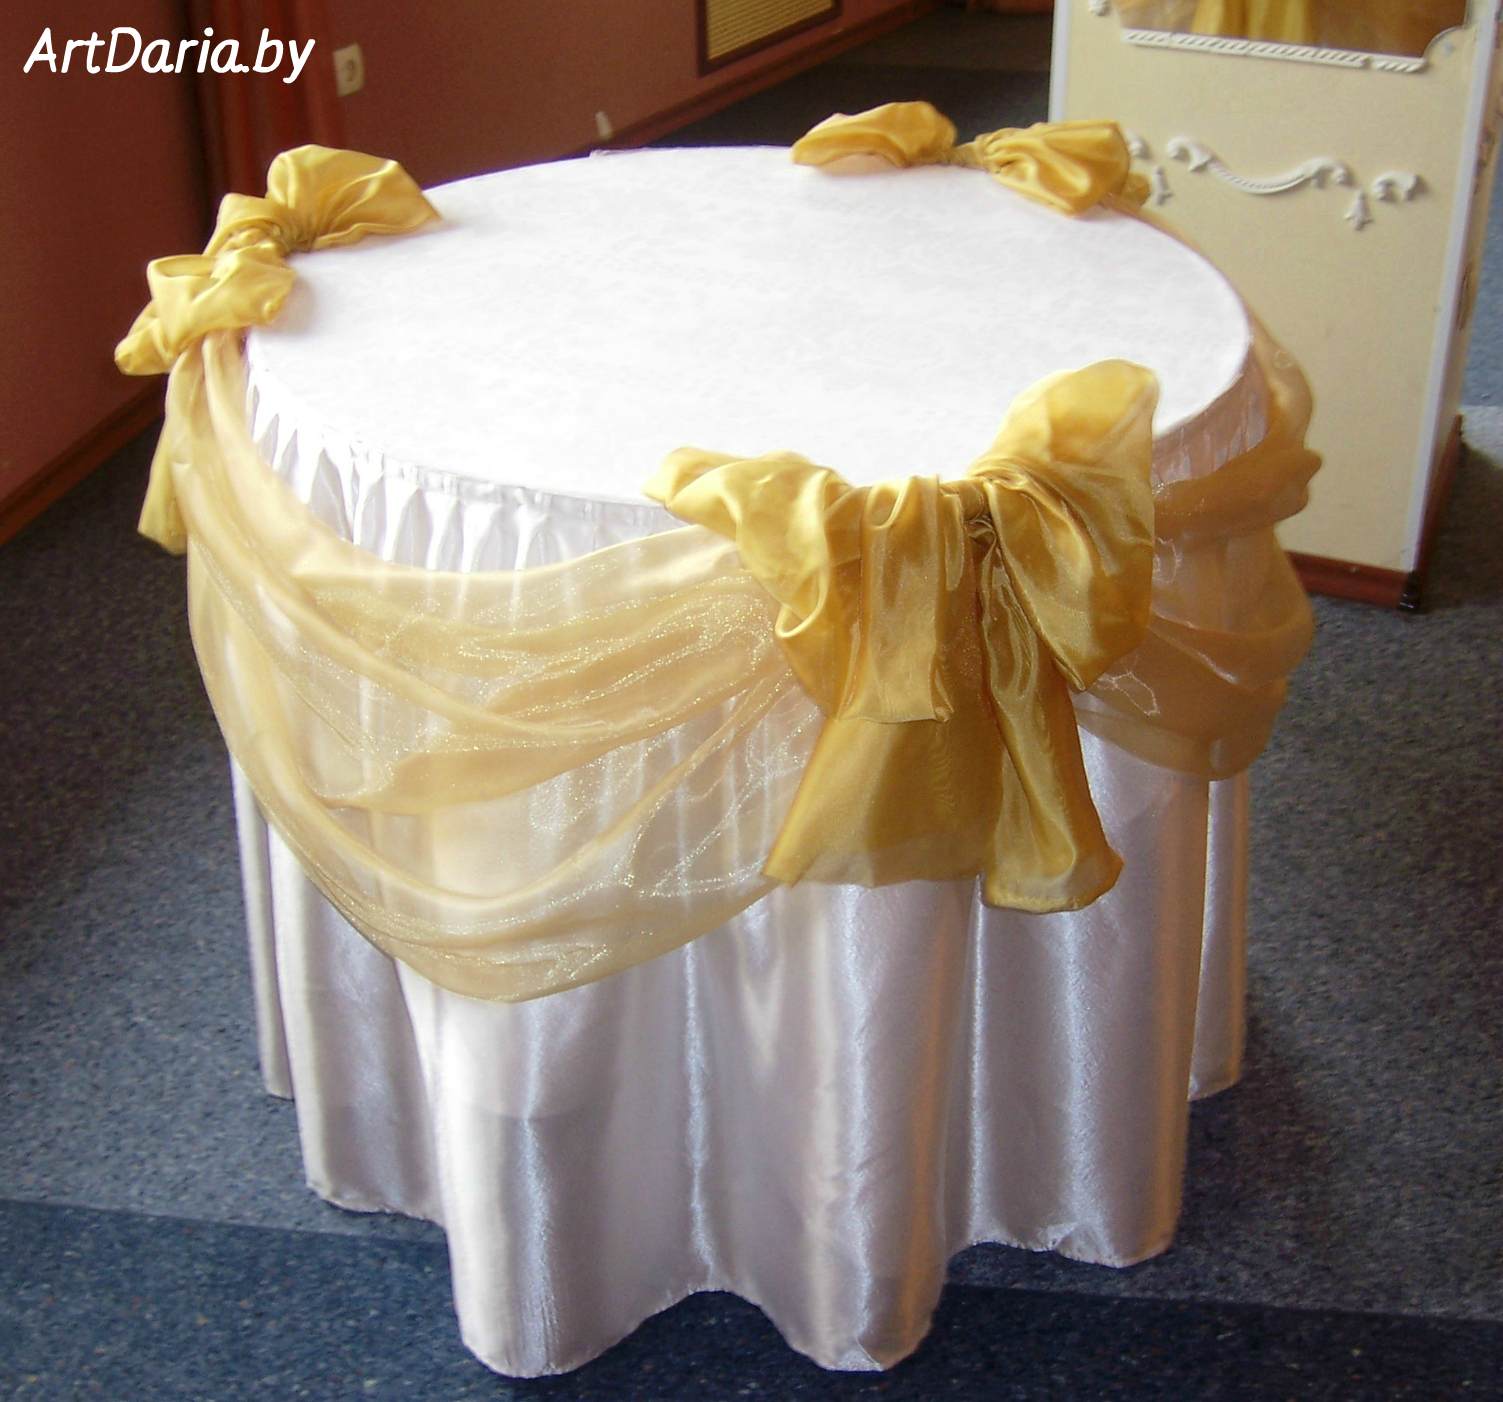 Круглый столик на свадьбу в прокат, низкие цены.  Для обряда дарения, для выездной регистрации, для оформления фотозон.